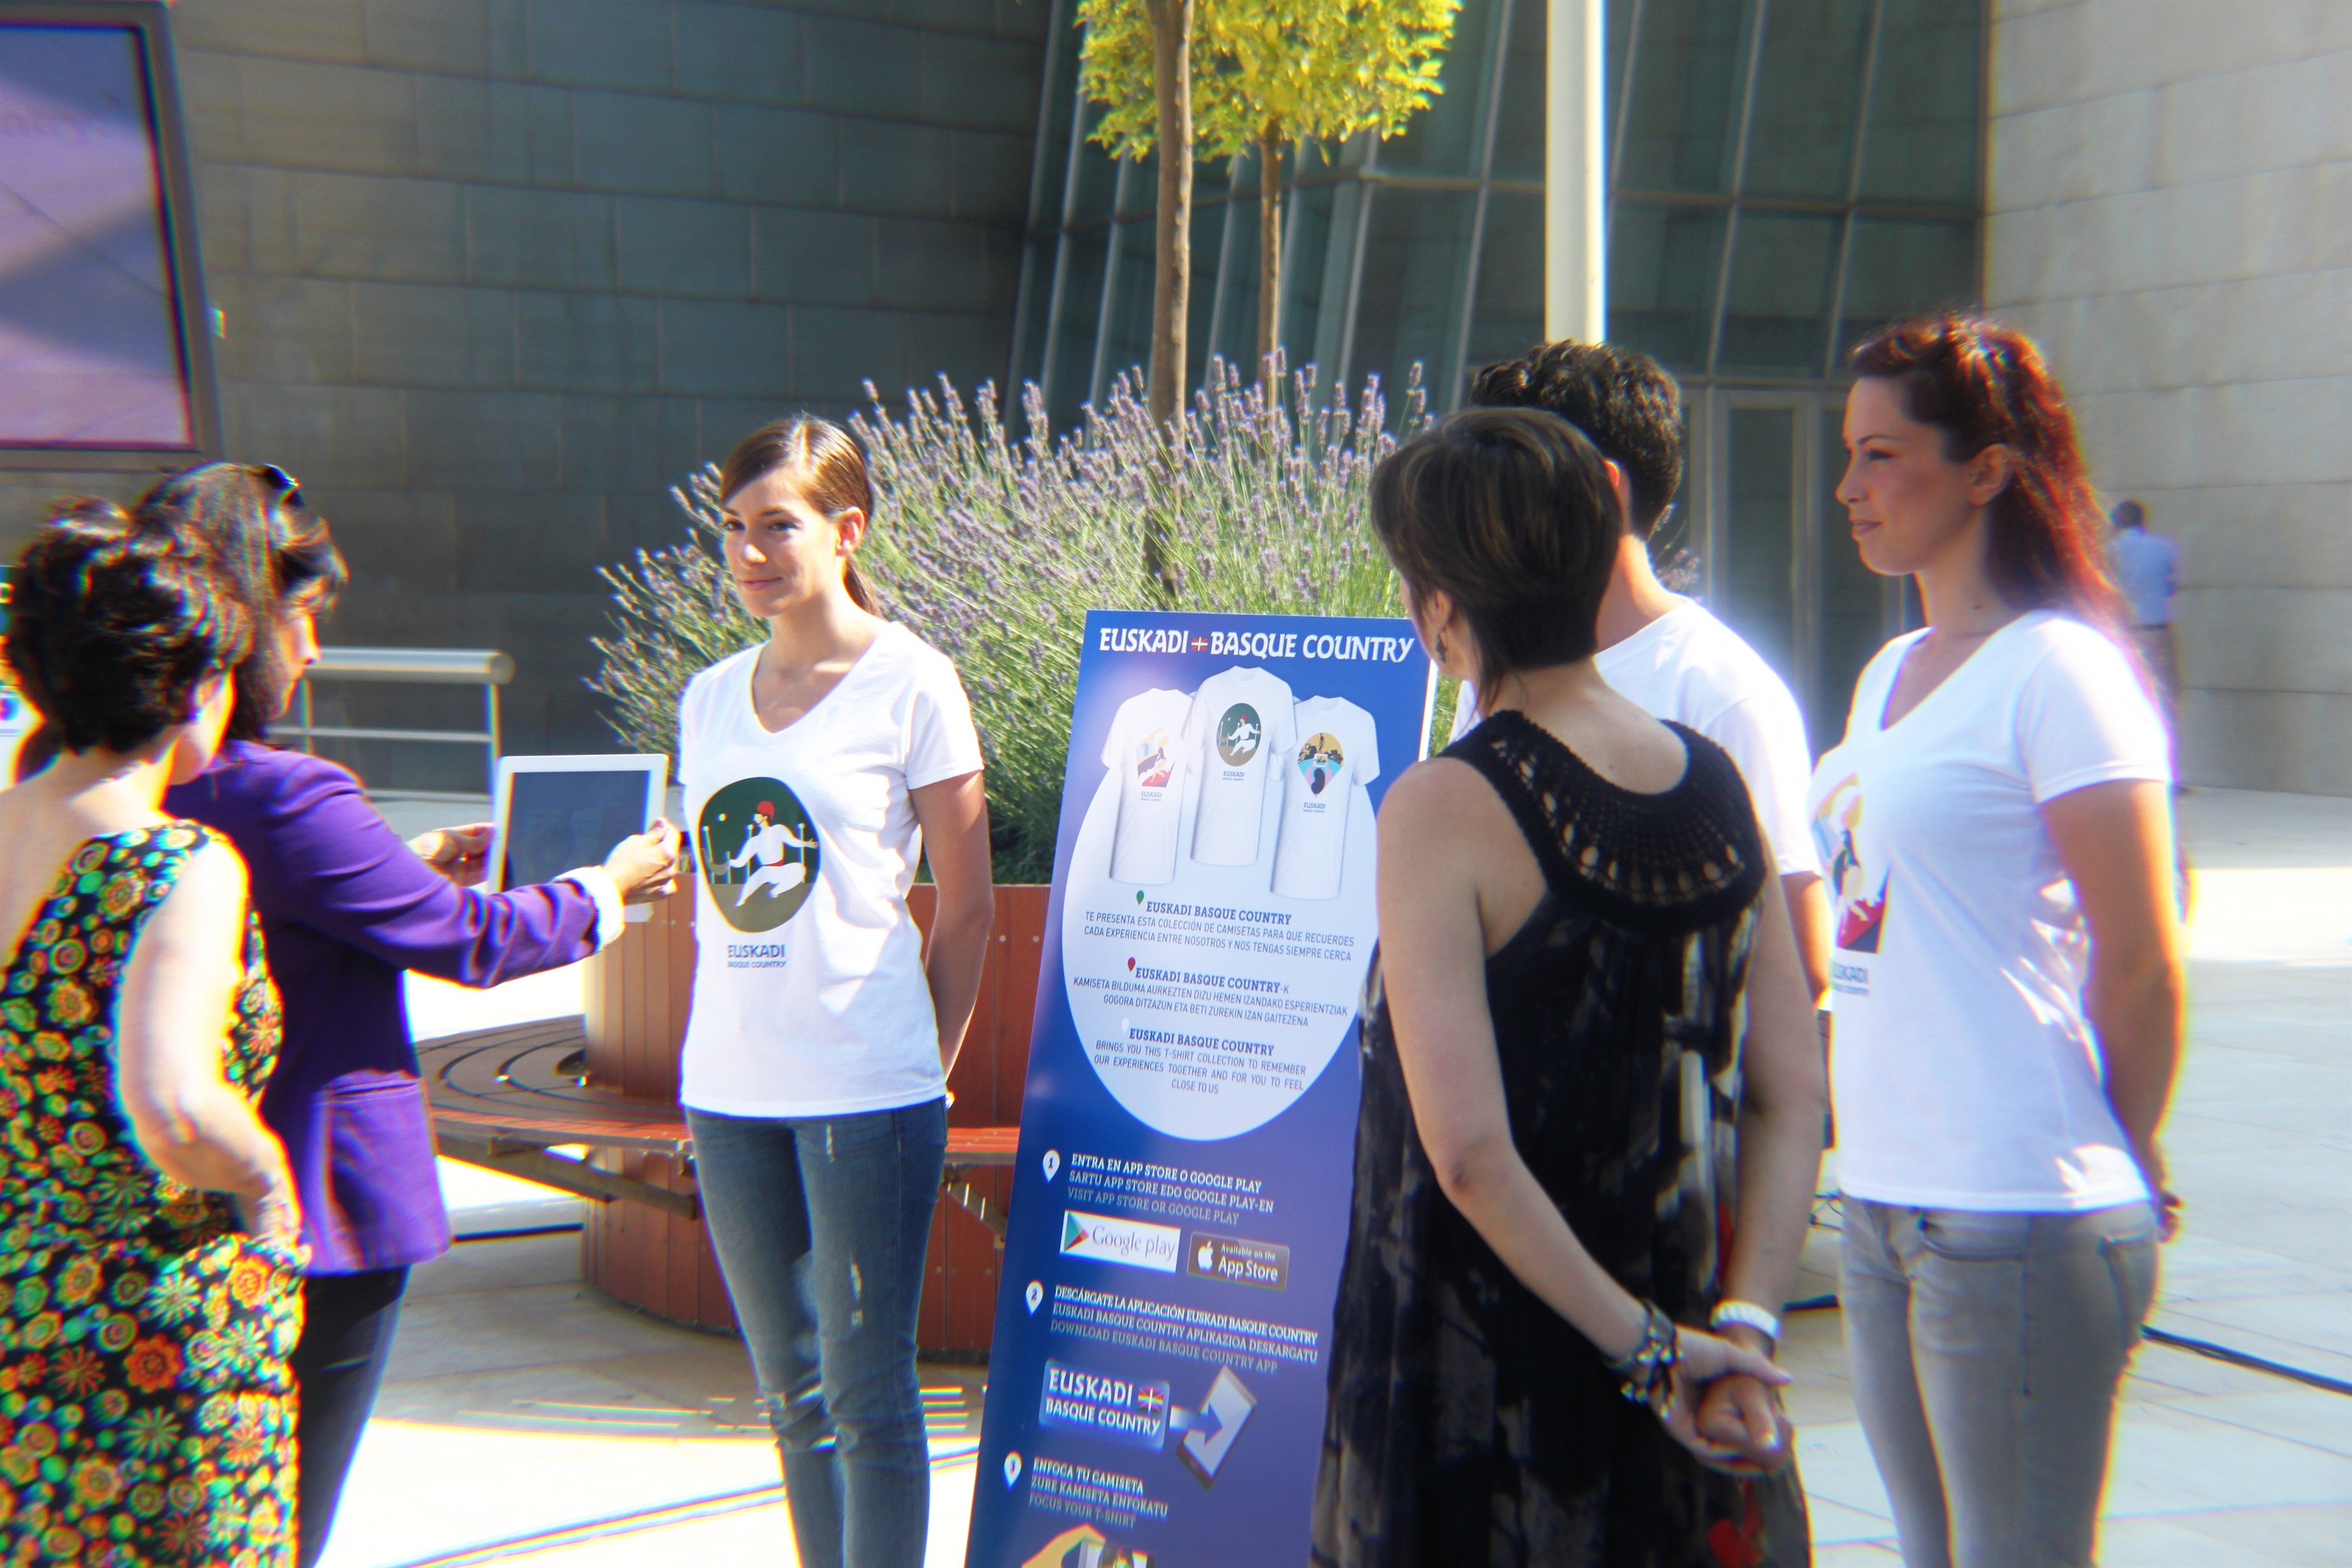 El Gobierno vasco promociona la marca «Basque Country» con camisetas de realidad aumentada y aplicaciones adaptadas